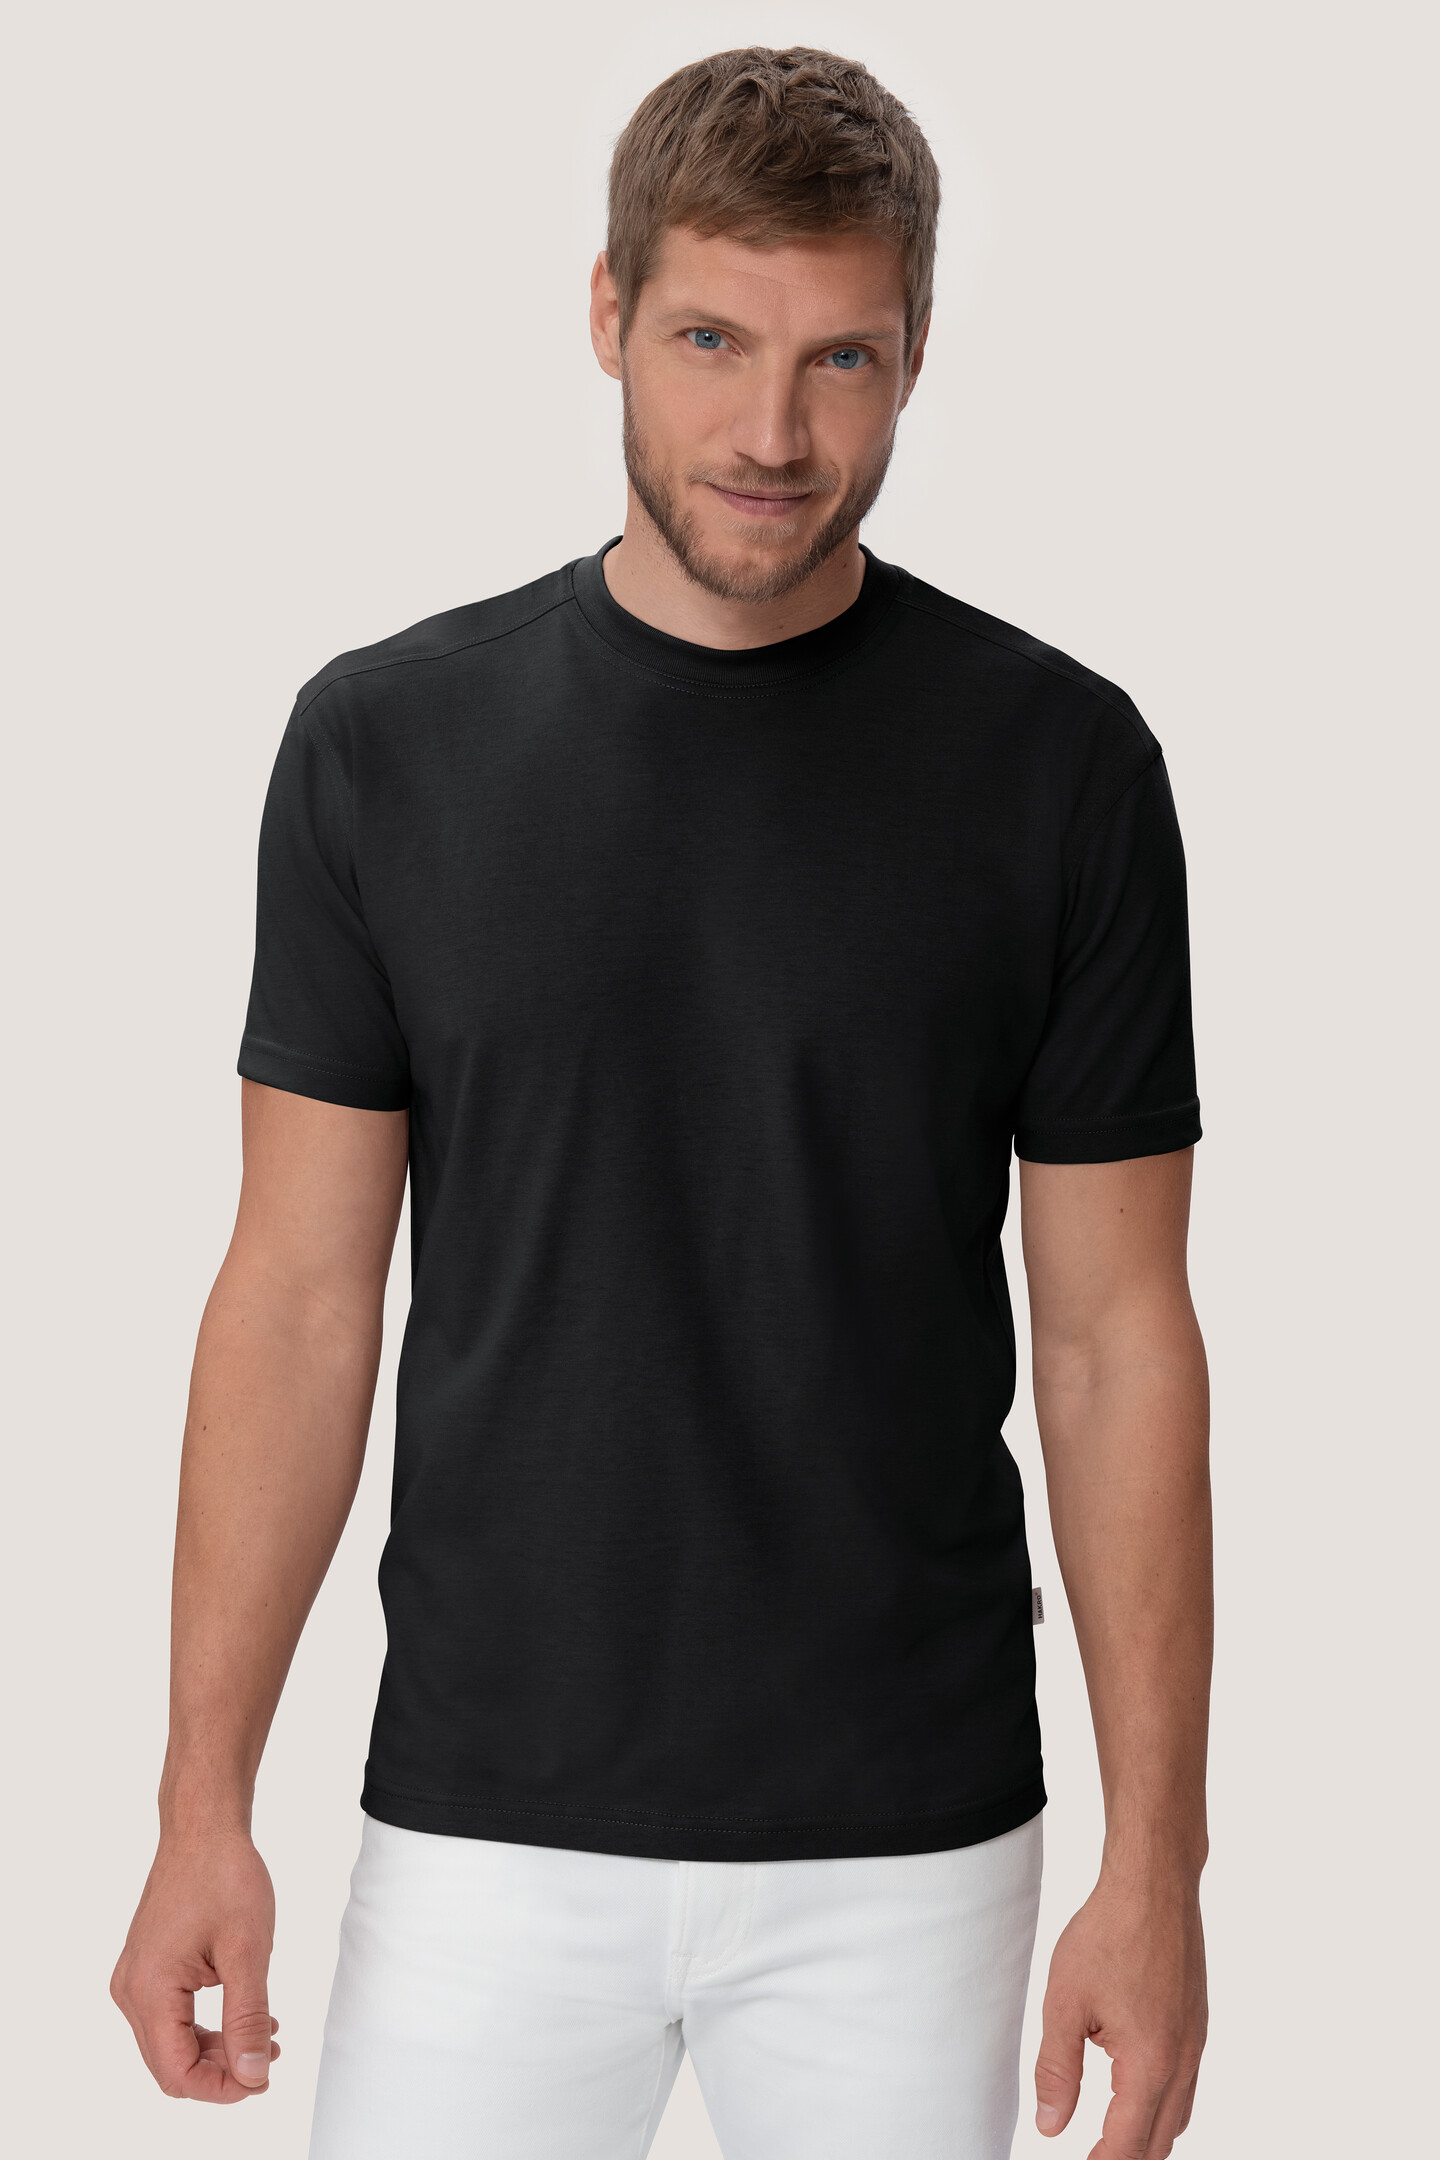 HAKRO T-Shirt 282 High Mikralinar®